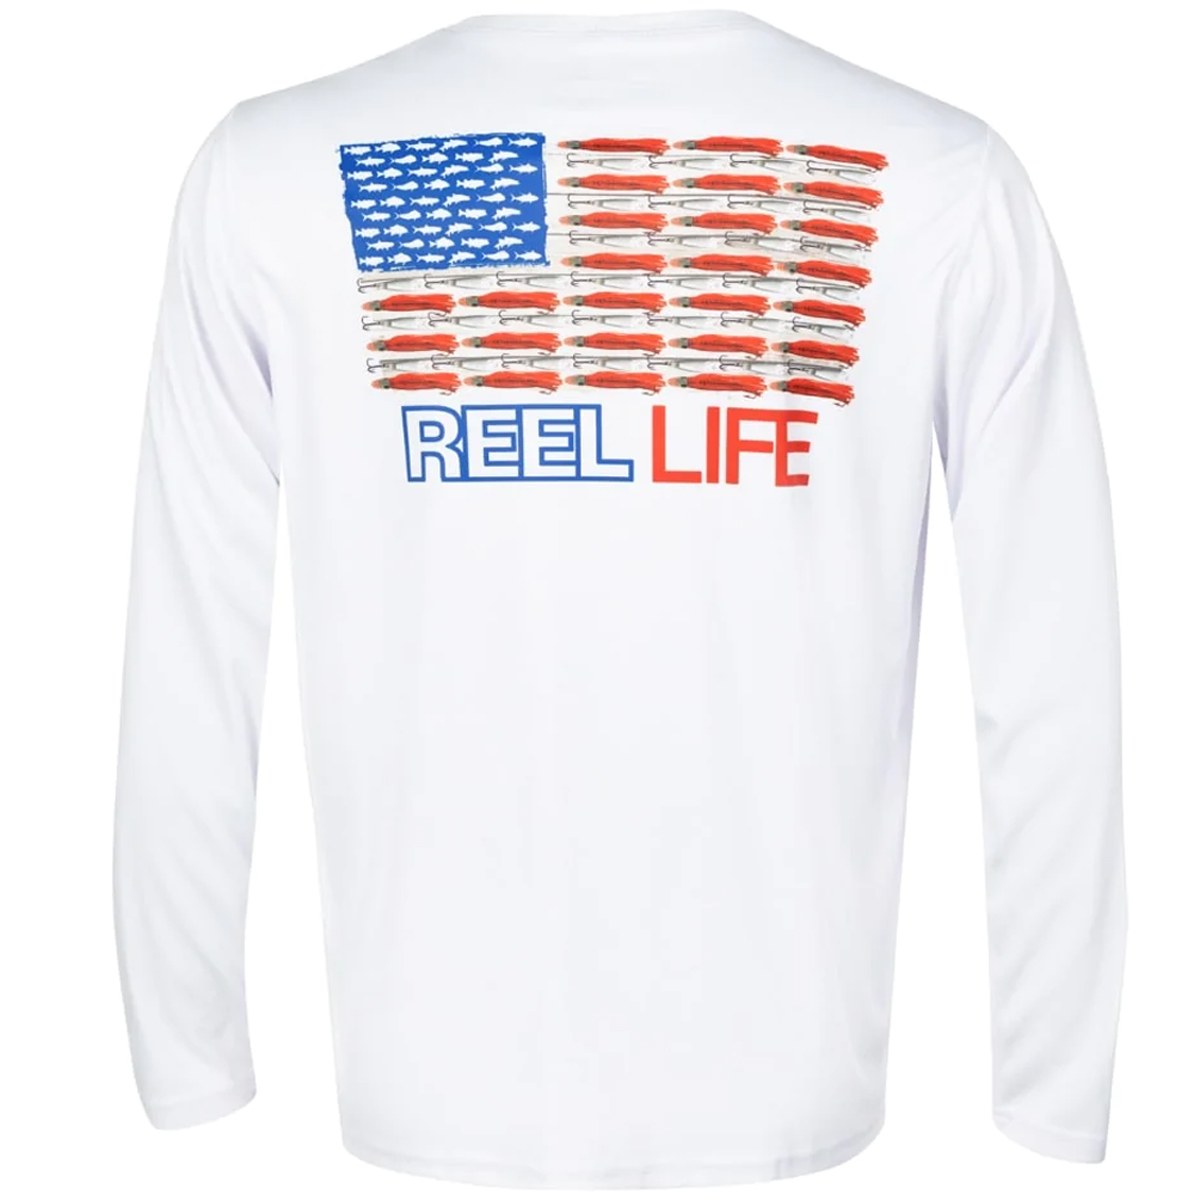 Reel Life Merica UV Long Sleeve Performance T-Shirt - White